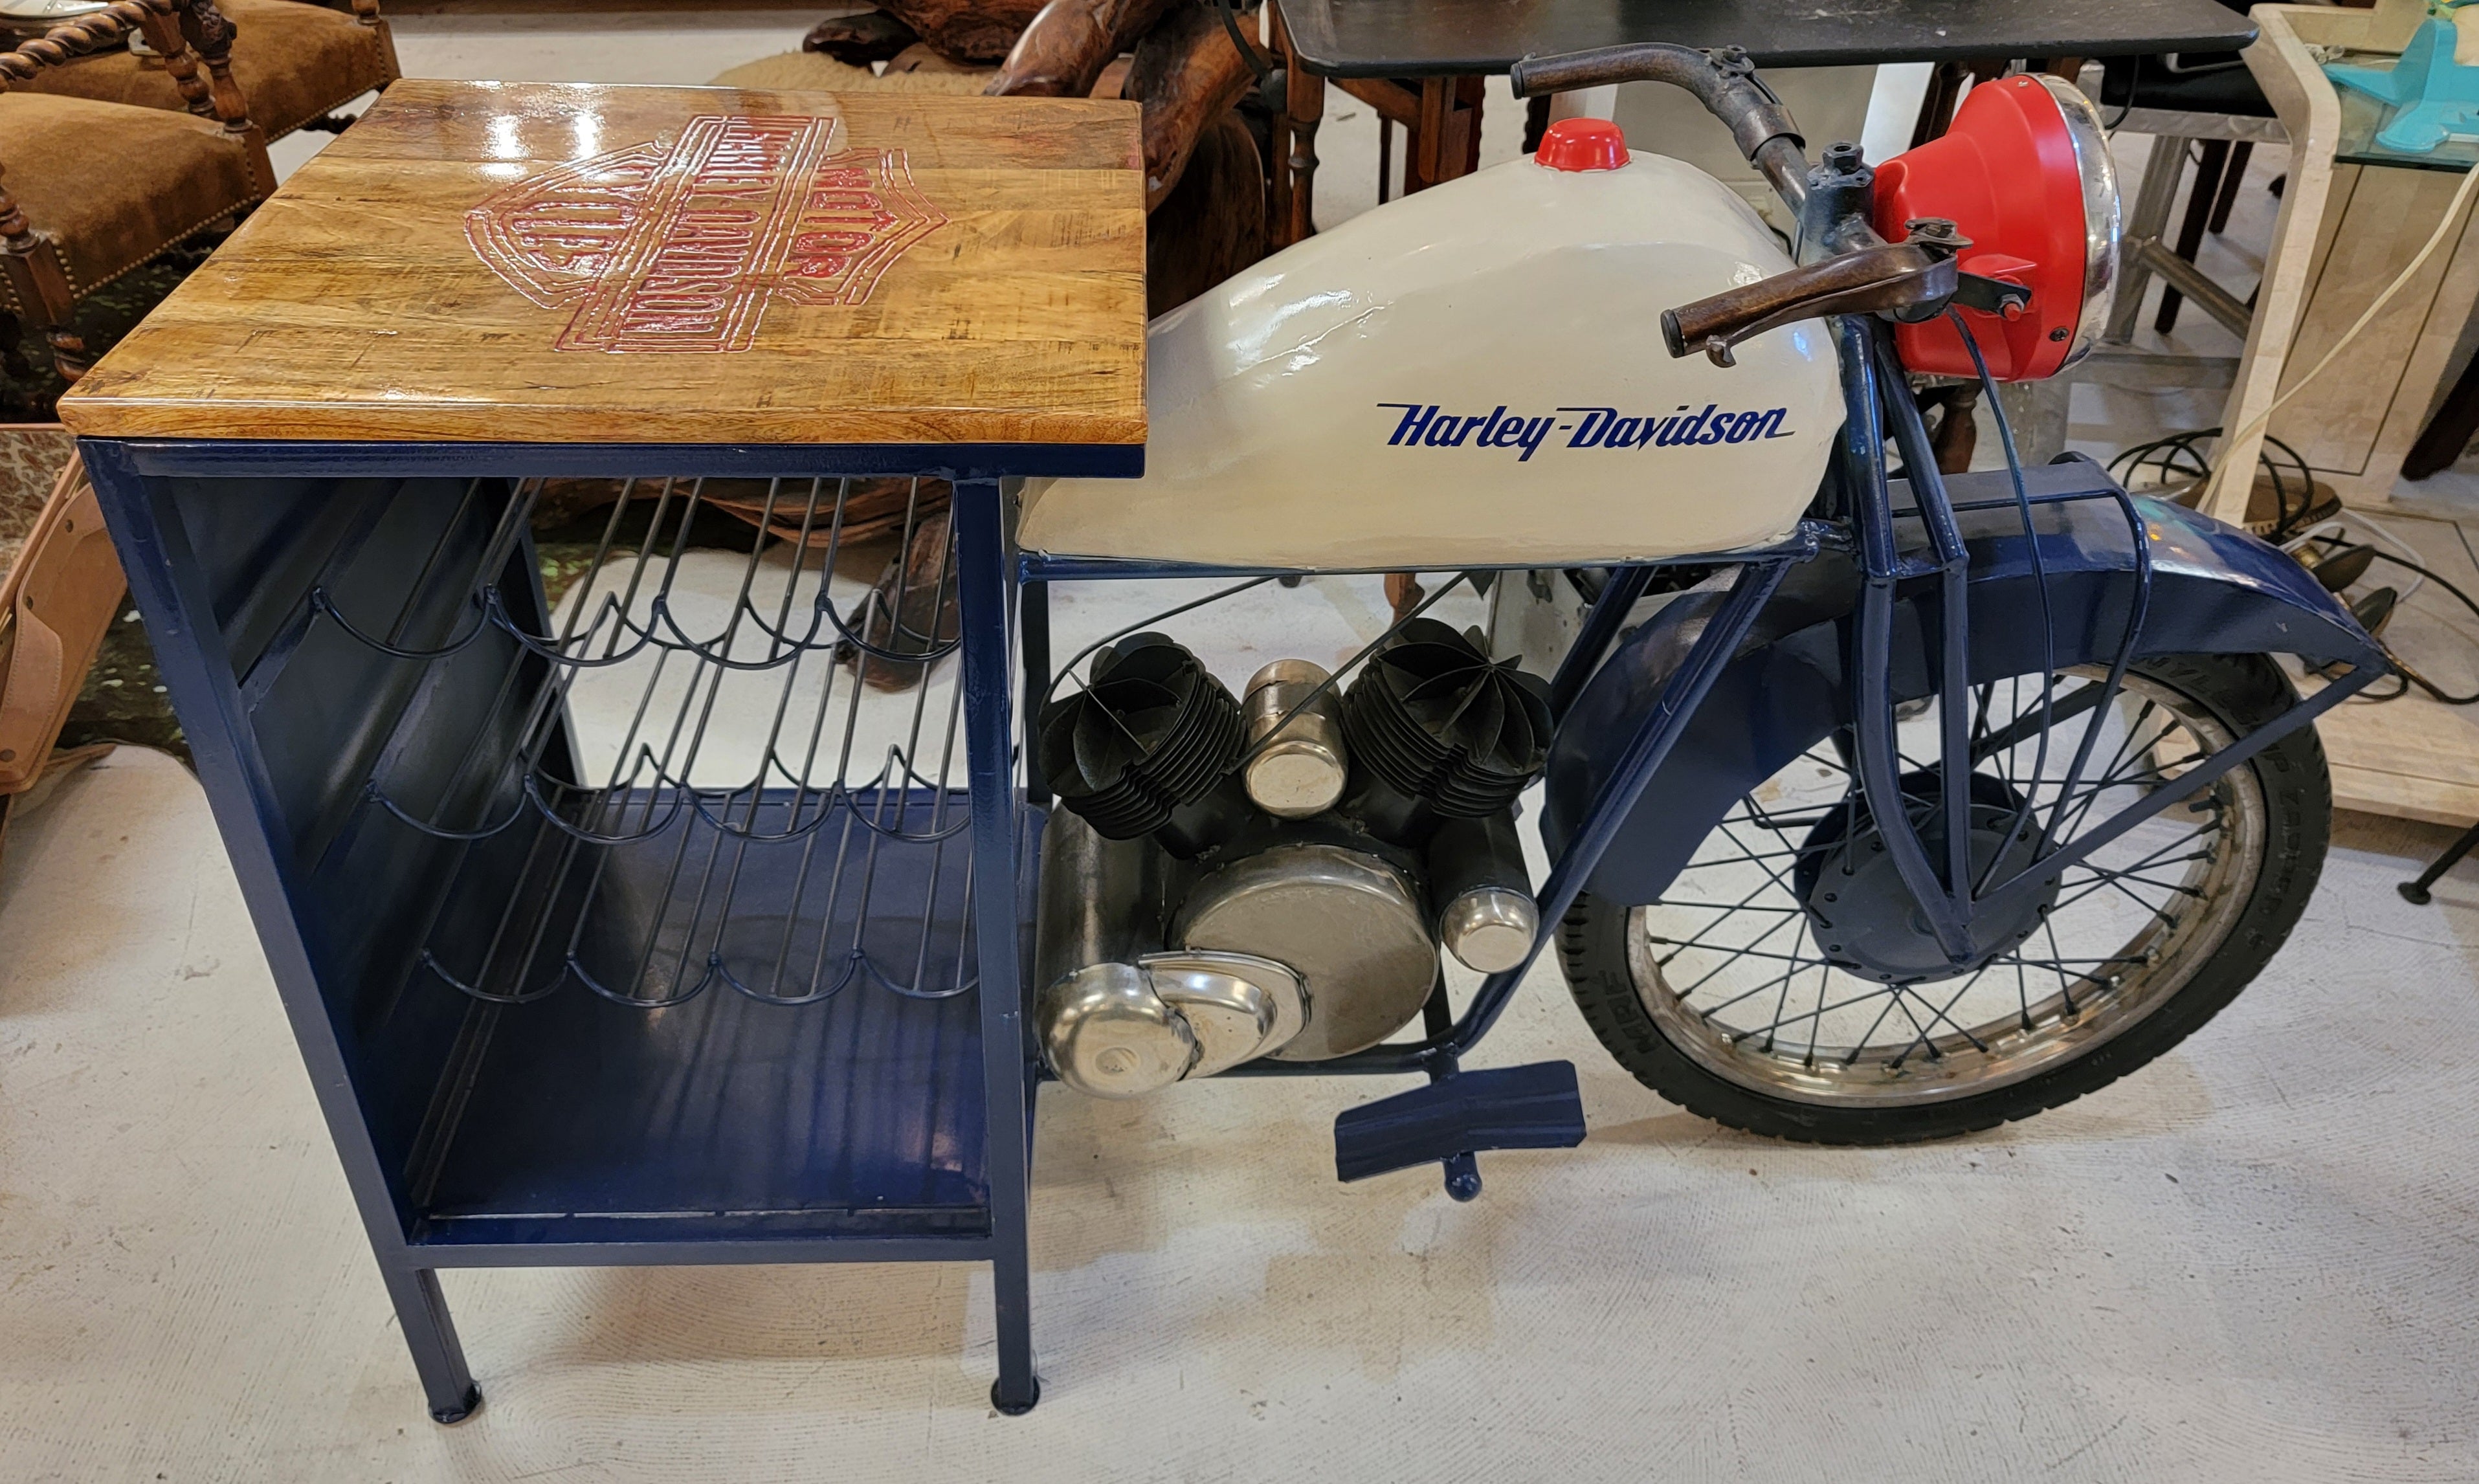 Demi-moto Harley Davidson fabriquée sur mesure, avec porte-bouteilles et table attachés à la partie arrière. Cette magnifique pièce porte l'inscription Harley Davidson Motor Cycle brûlée dans la partie supérieure et colorée en rouge. Il s'agit d'une